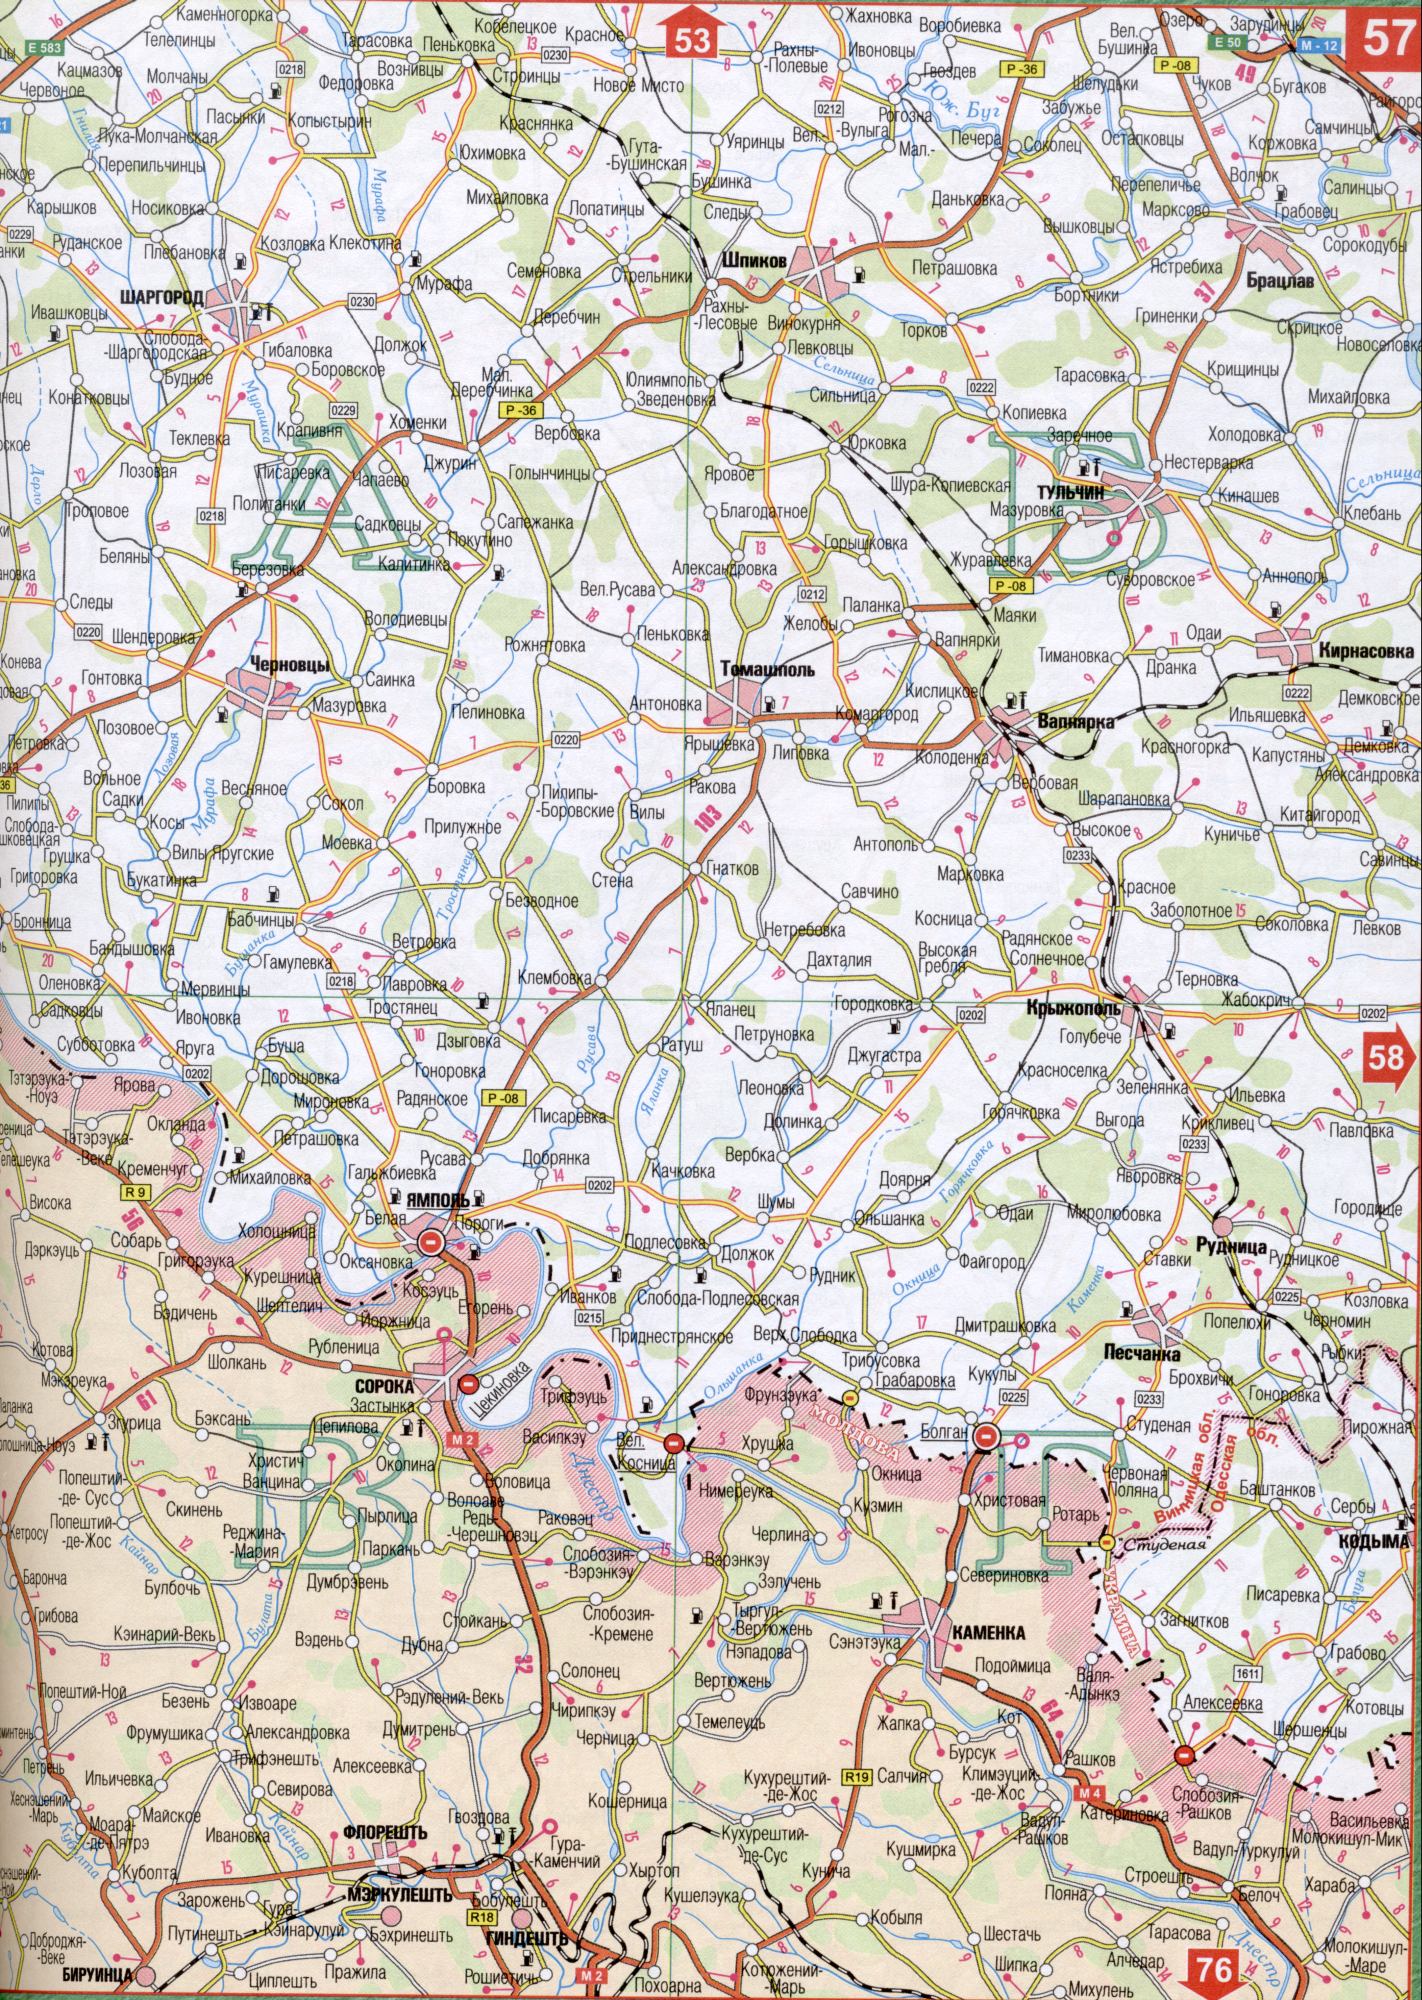 Map of Vinnitsa region of Ukraine. Detailed map of scale 1cm: 5000m Vinnytsia region. Free download Shargorod, Pechora, Sokolets, Shpikov, Noises, Dolzhok